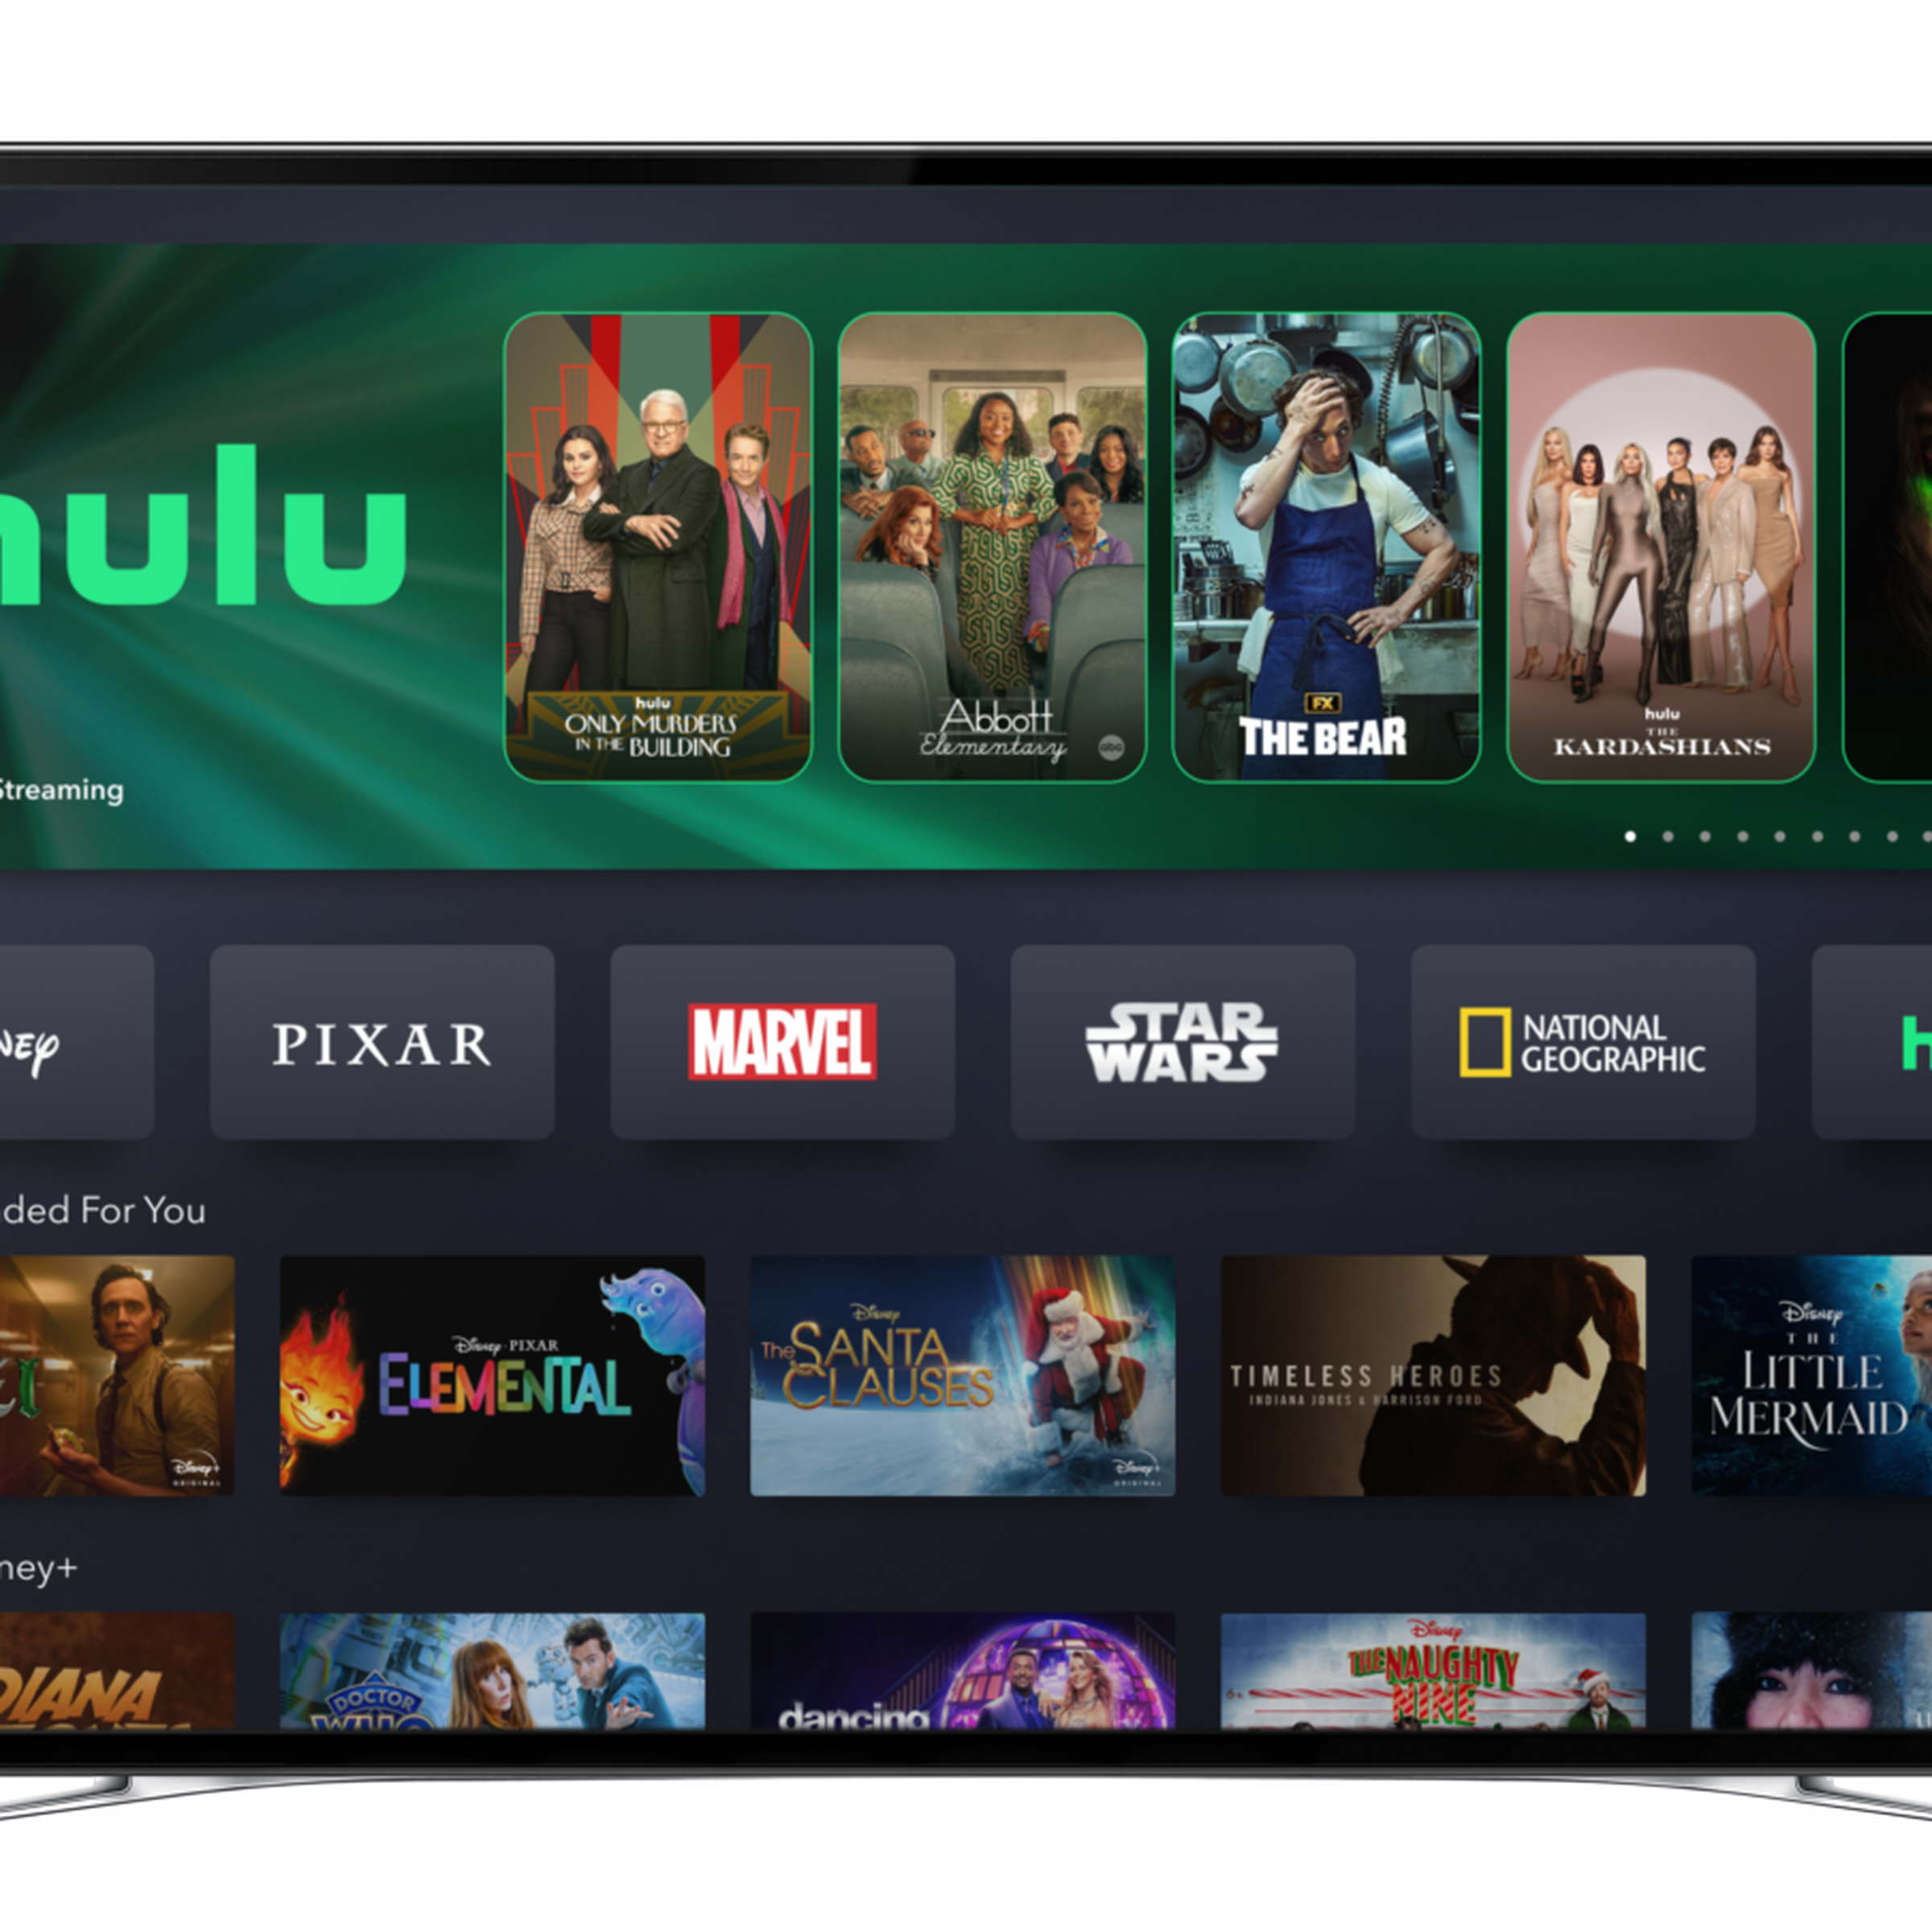 An image showing the Hulu hub on Disney Plus